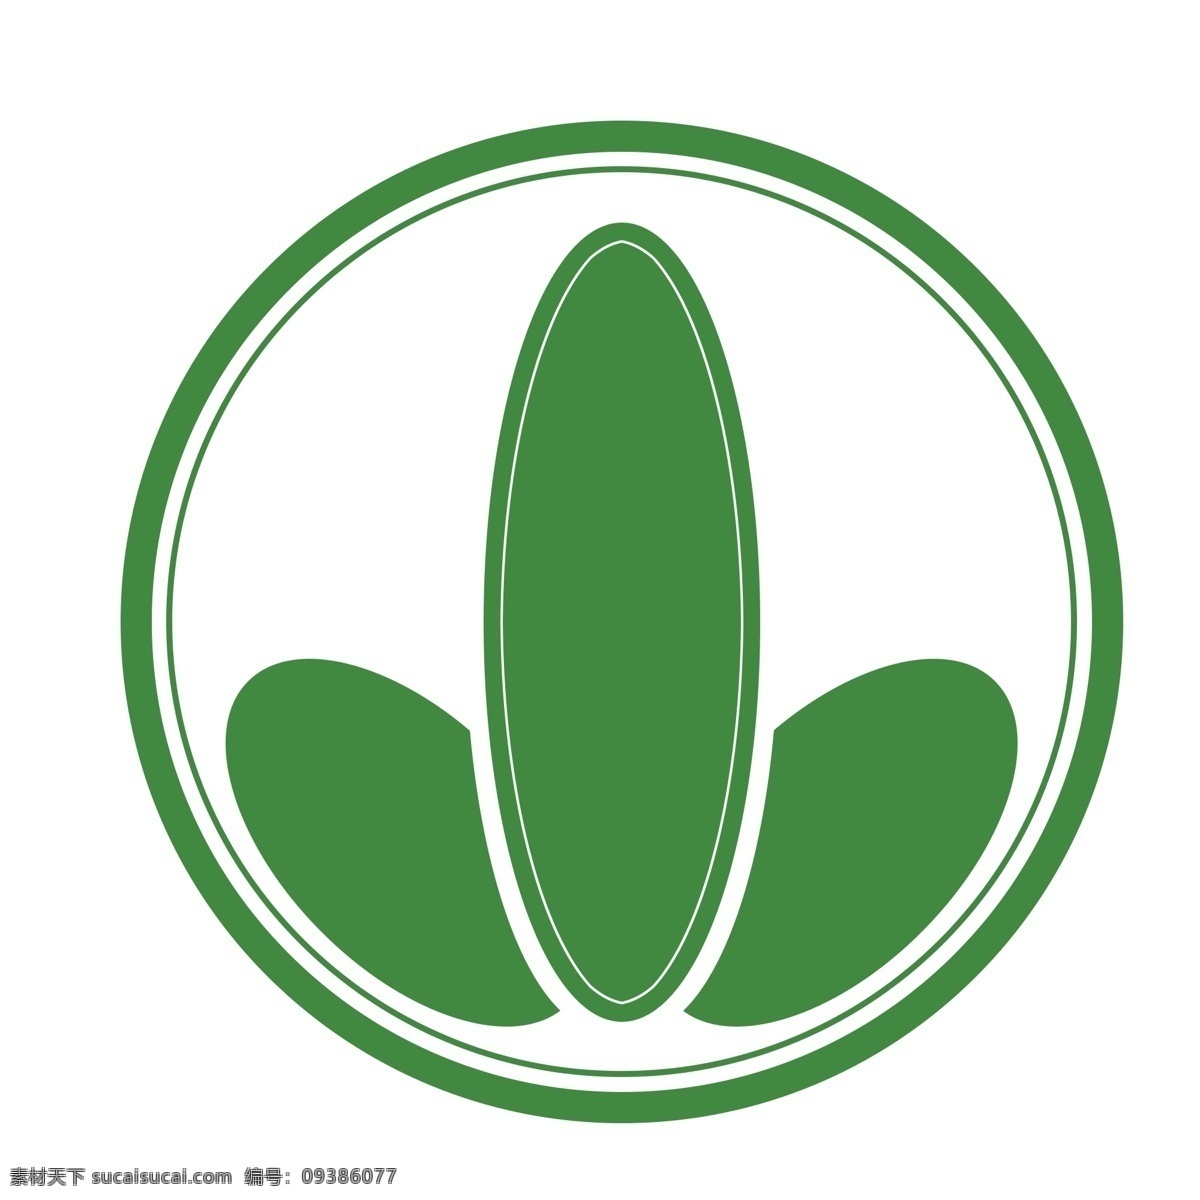 圆形 健康 减肥 logo 三叶草 减肥logo 绿色 瘦身 美体 苗条 不吃药 安全健康